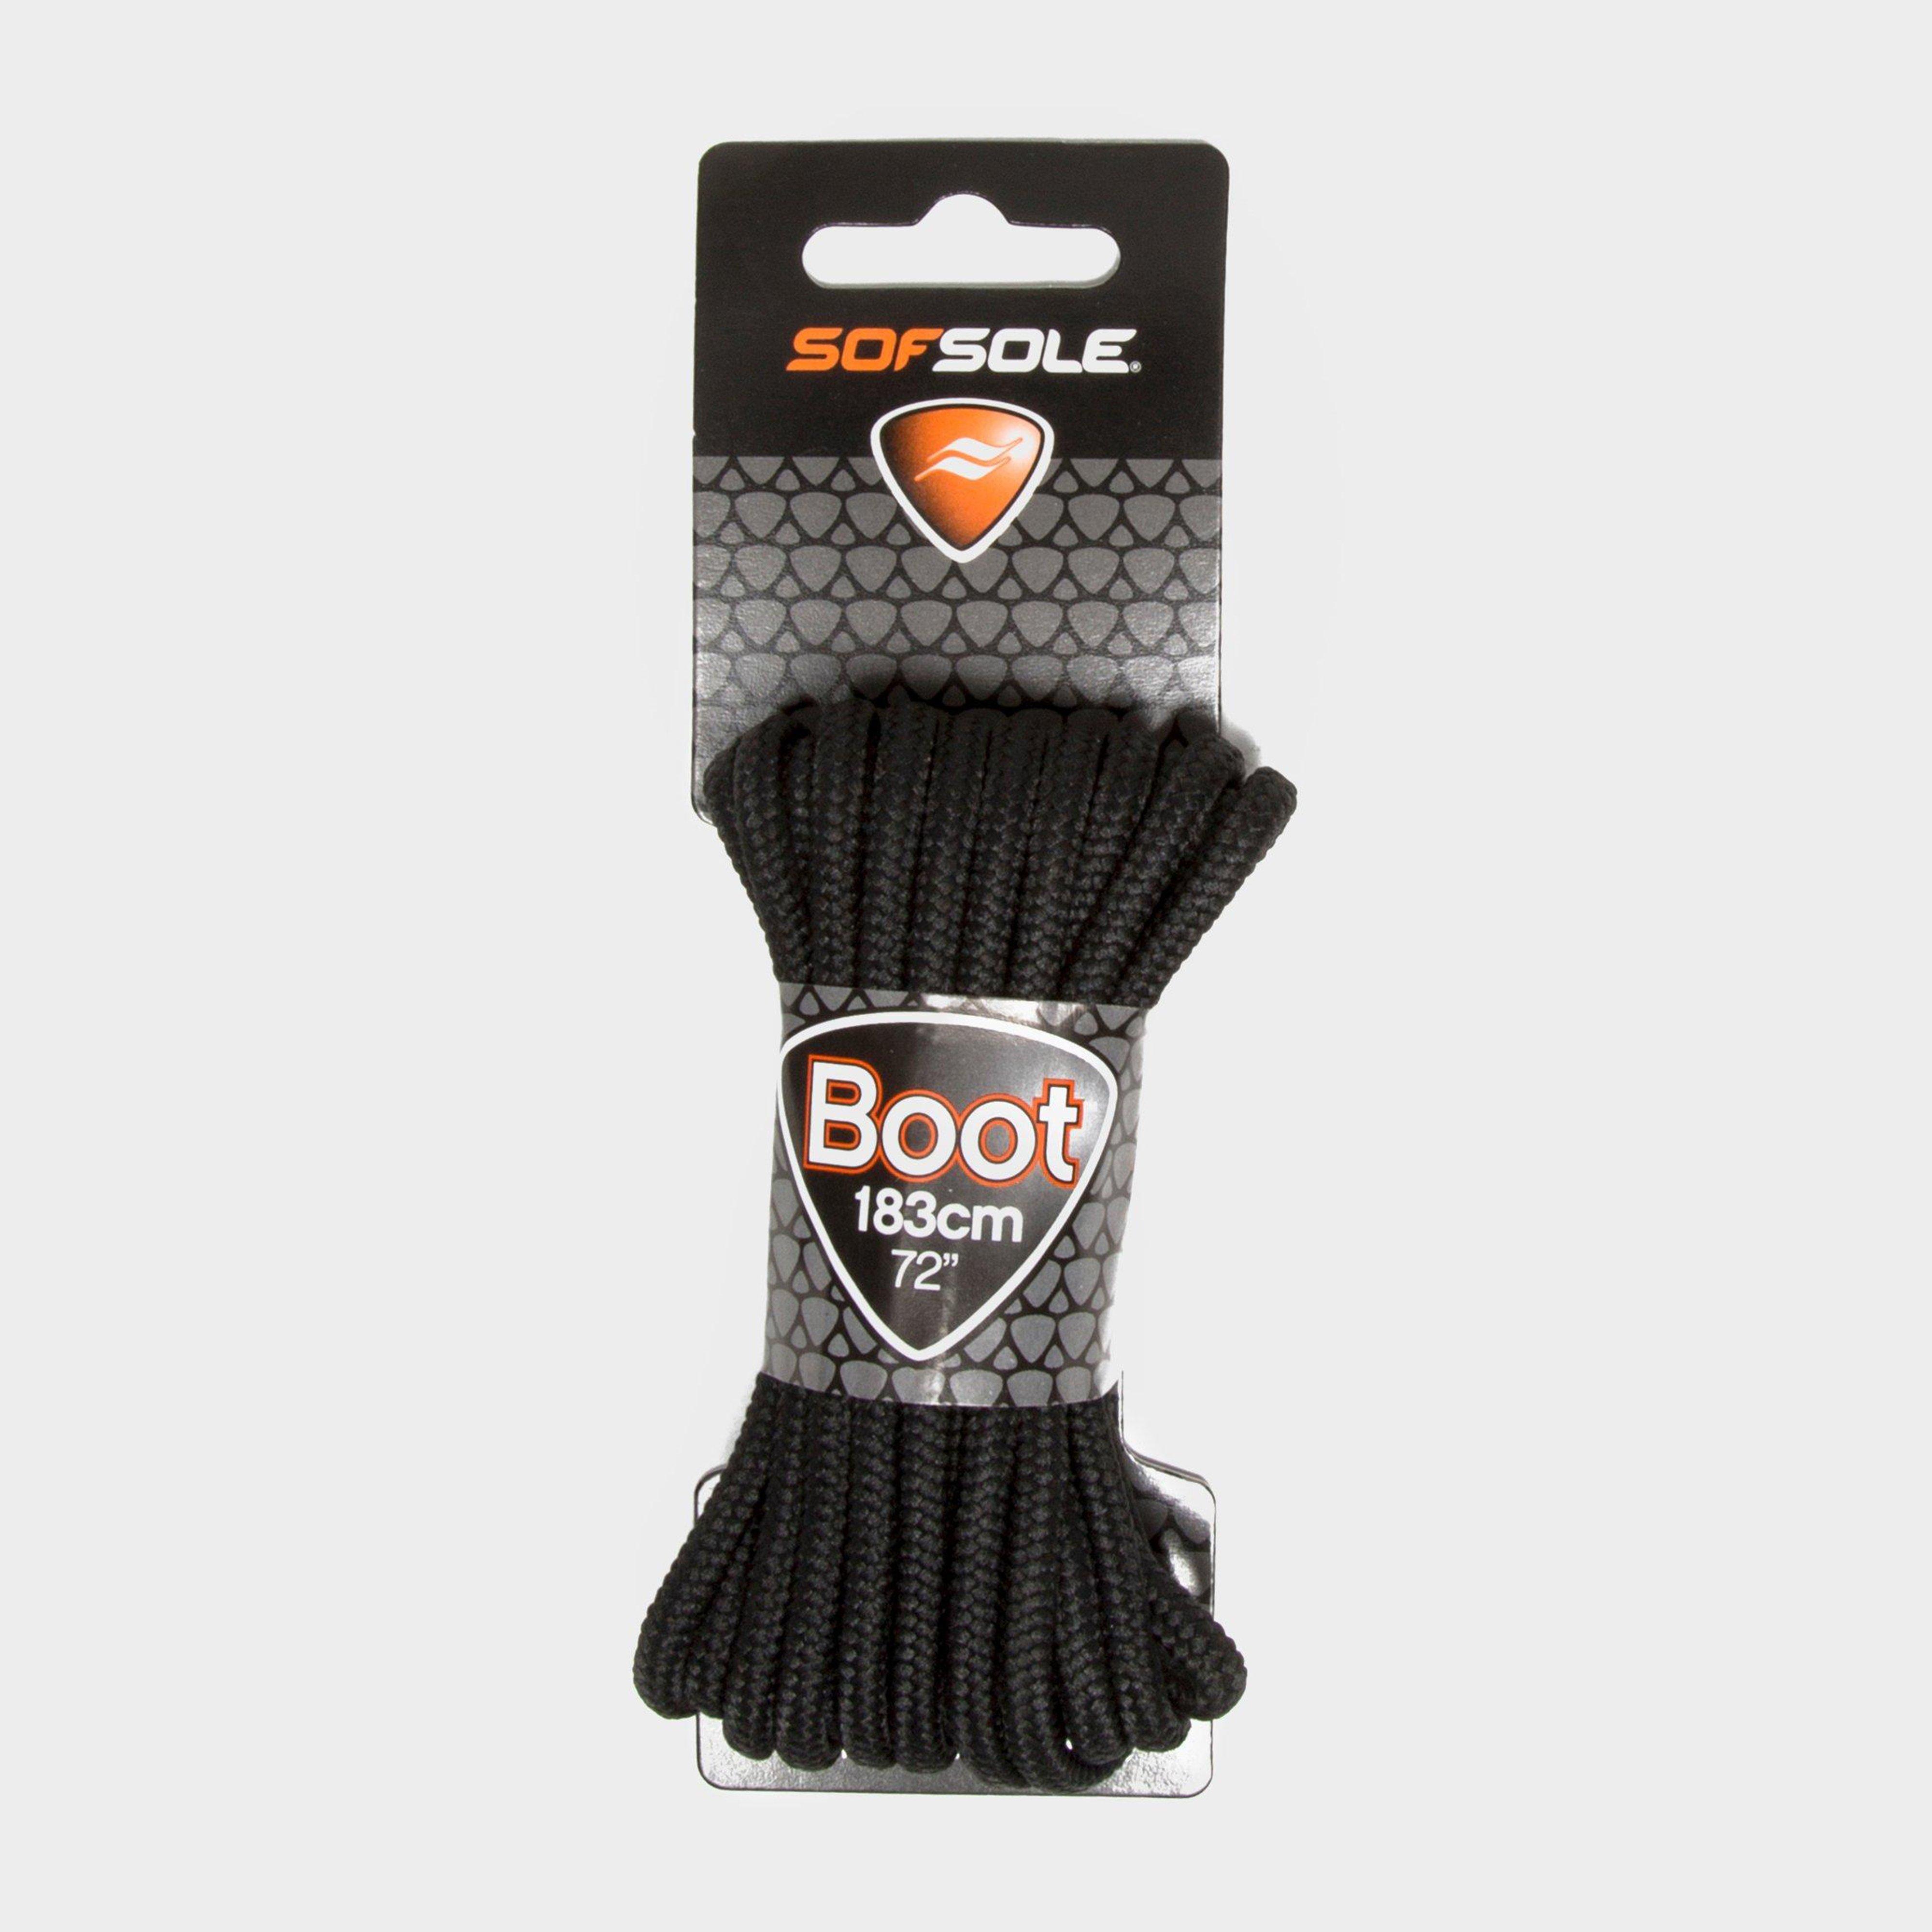 Sof Sole Wax Boot Laces - 183cm - Black/blk  Black/blk